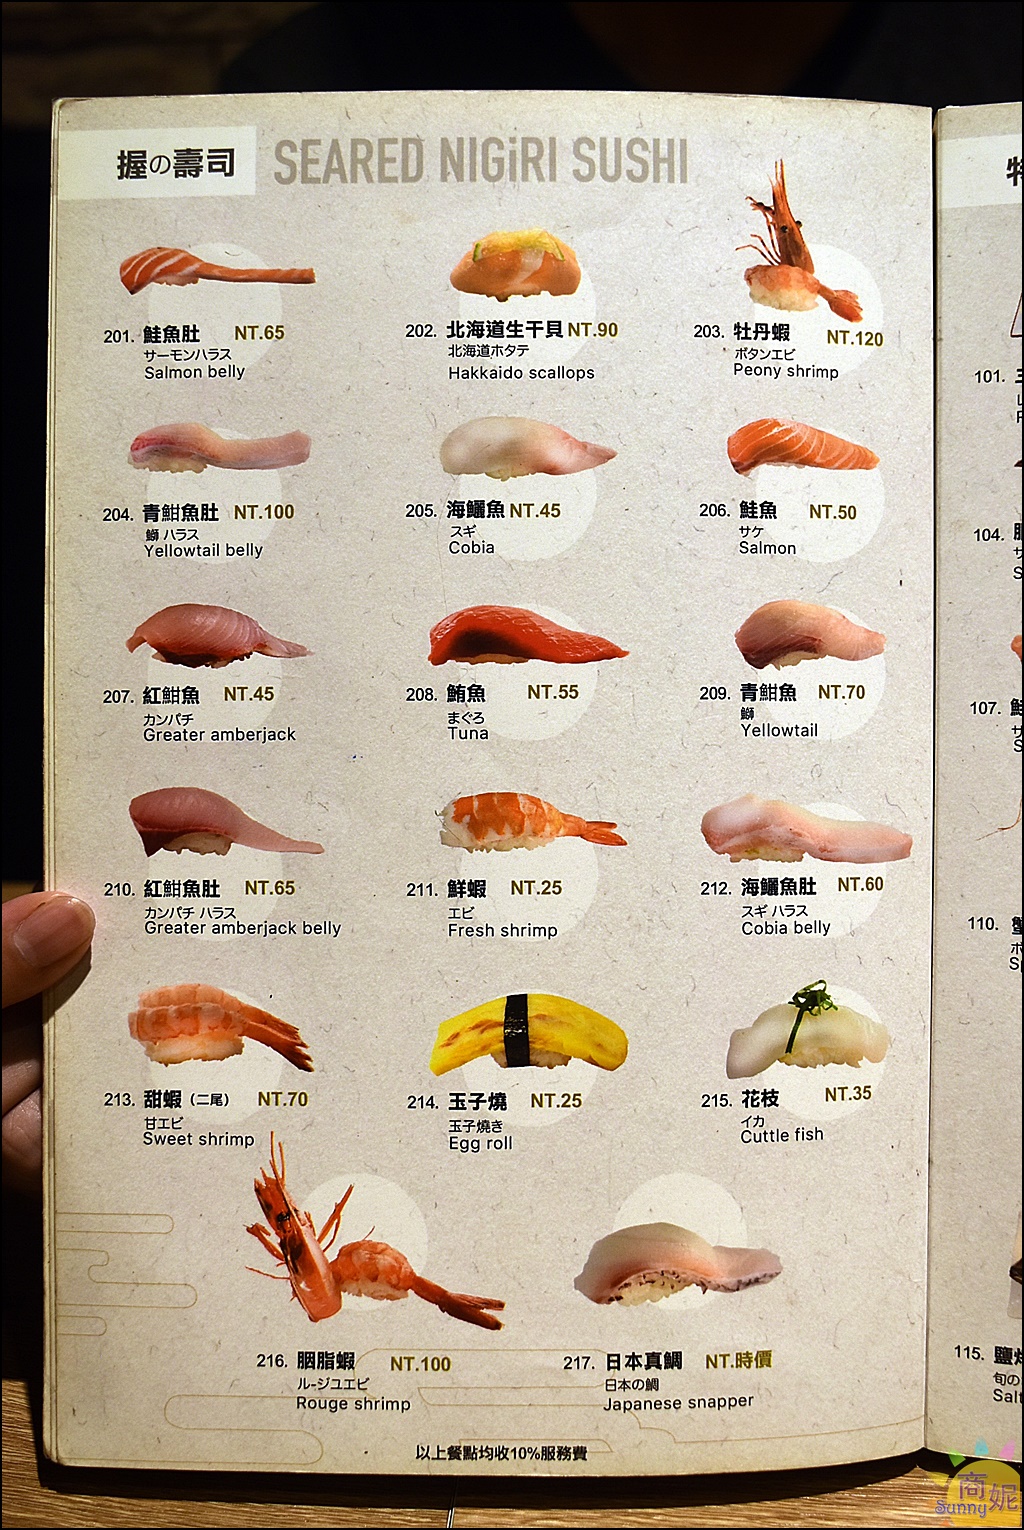 中科平價美食。一貫手作壽司。最新菜單Menu店家資訊